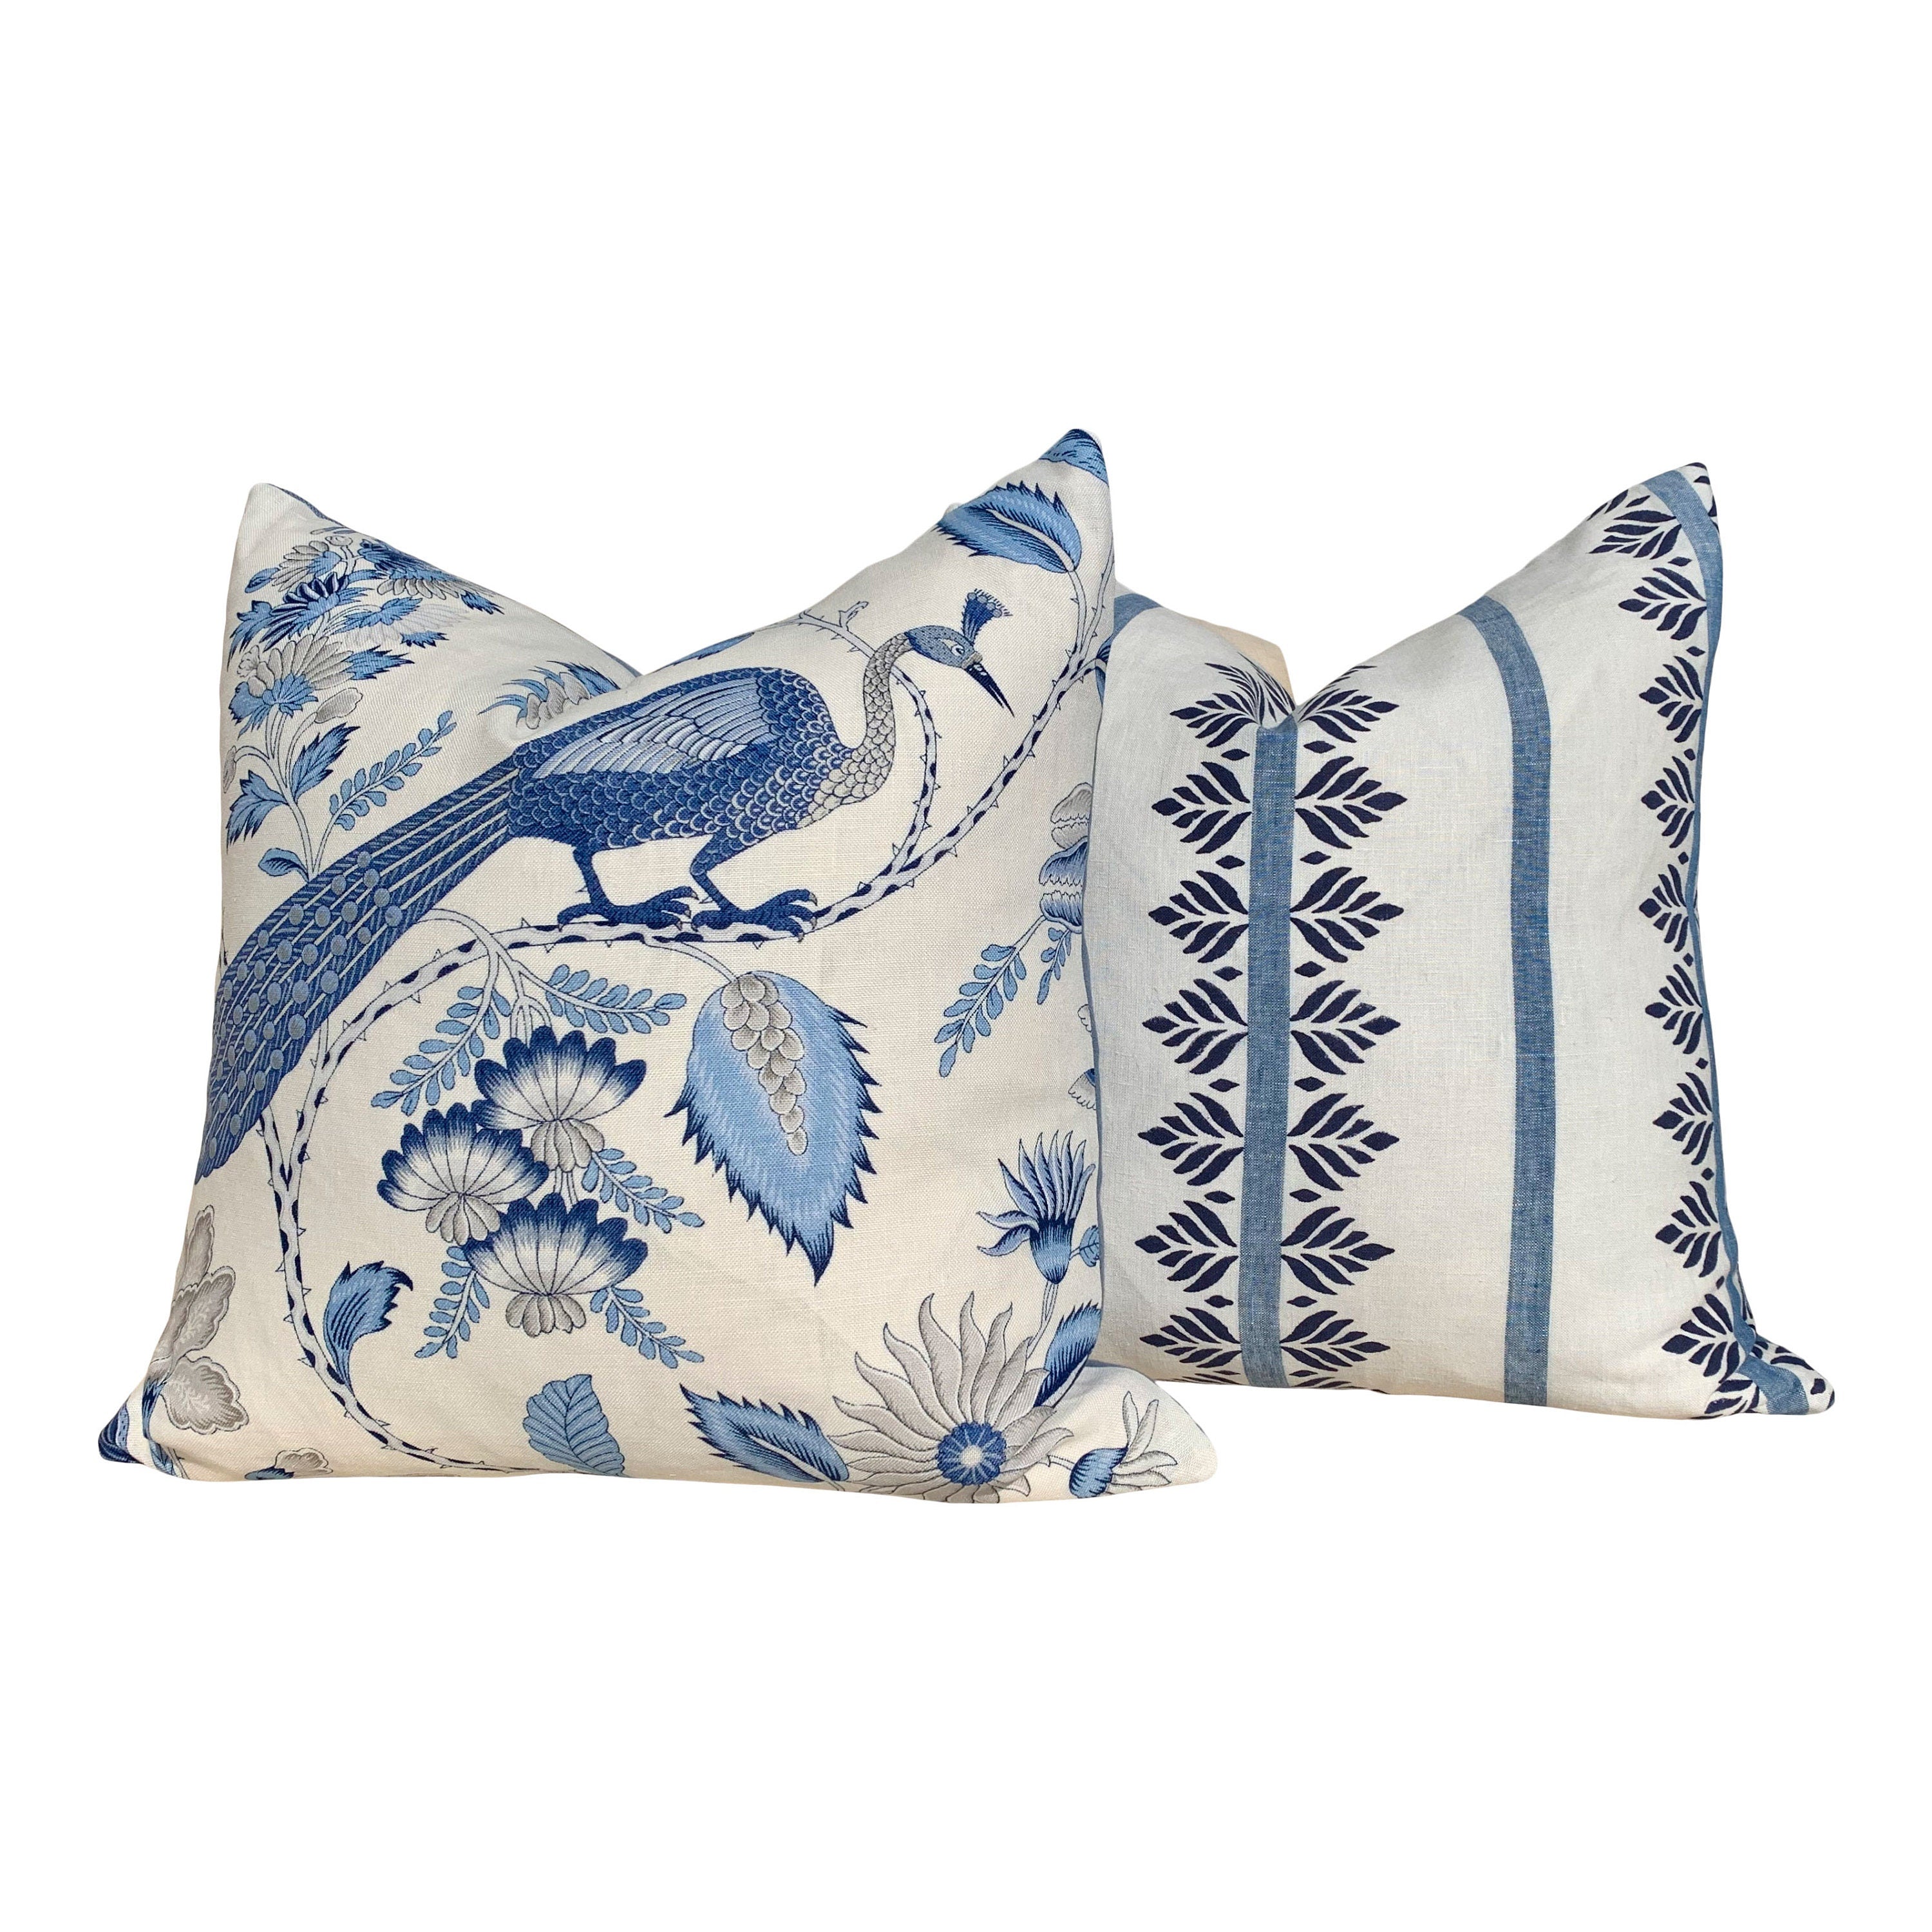 Schumacher Champagne Pillow in Blue and Gris. Lumbar Linen Pillow, designer pillow, accent cushion cover, decorative pillow